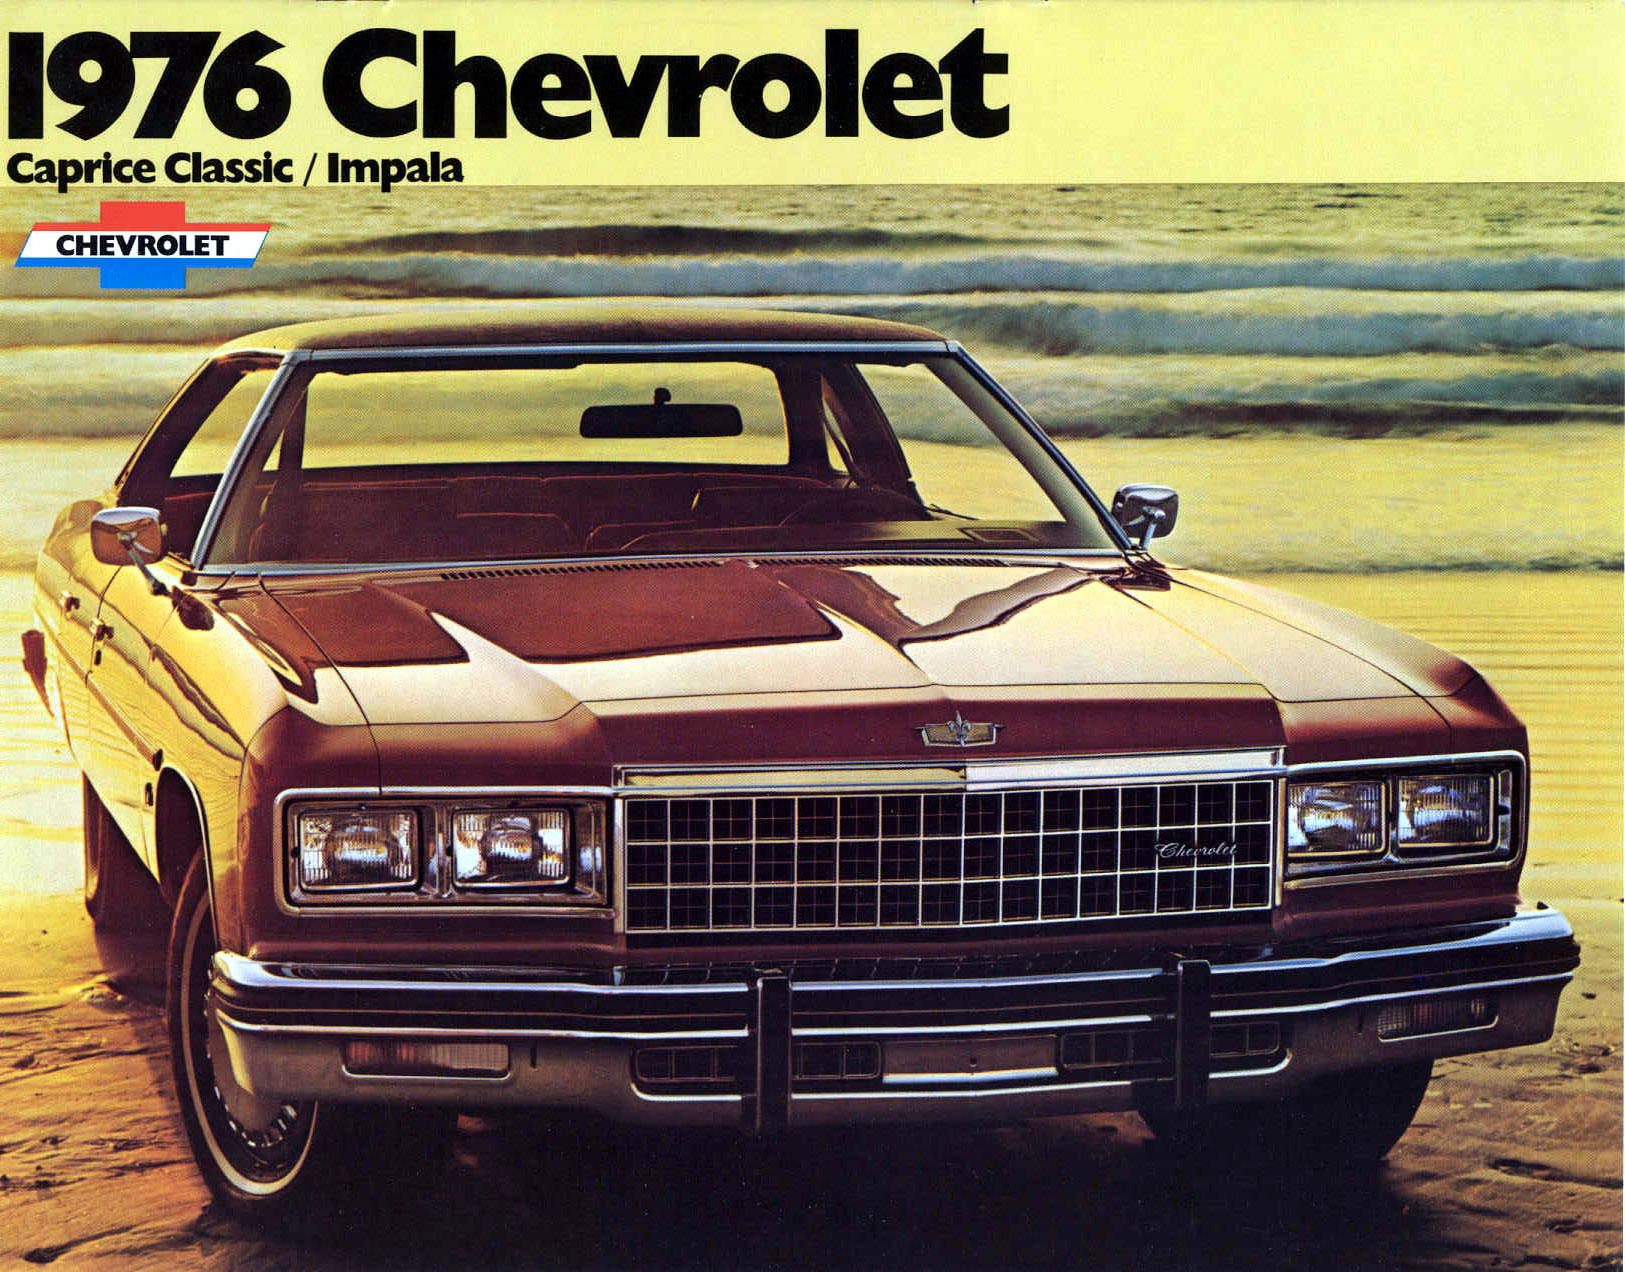 1976 Chevrolet Full Size-01